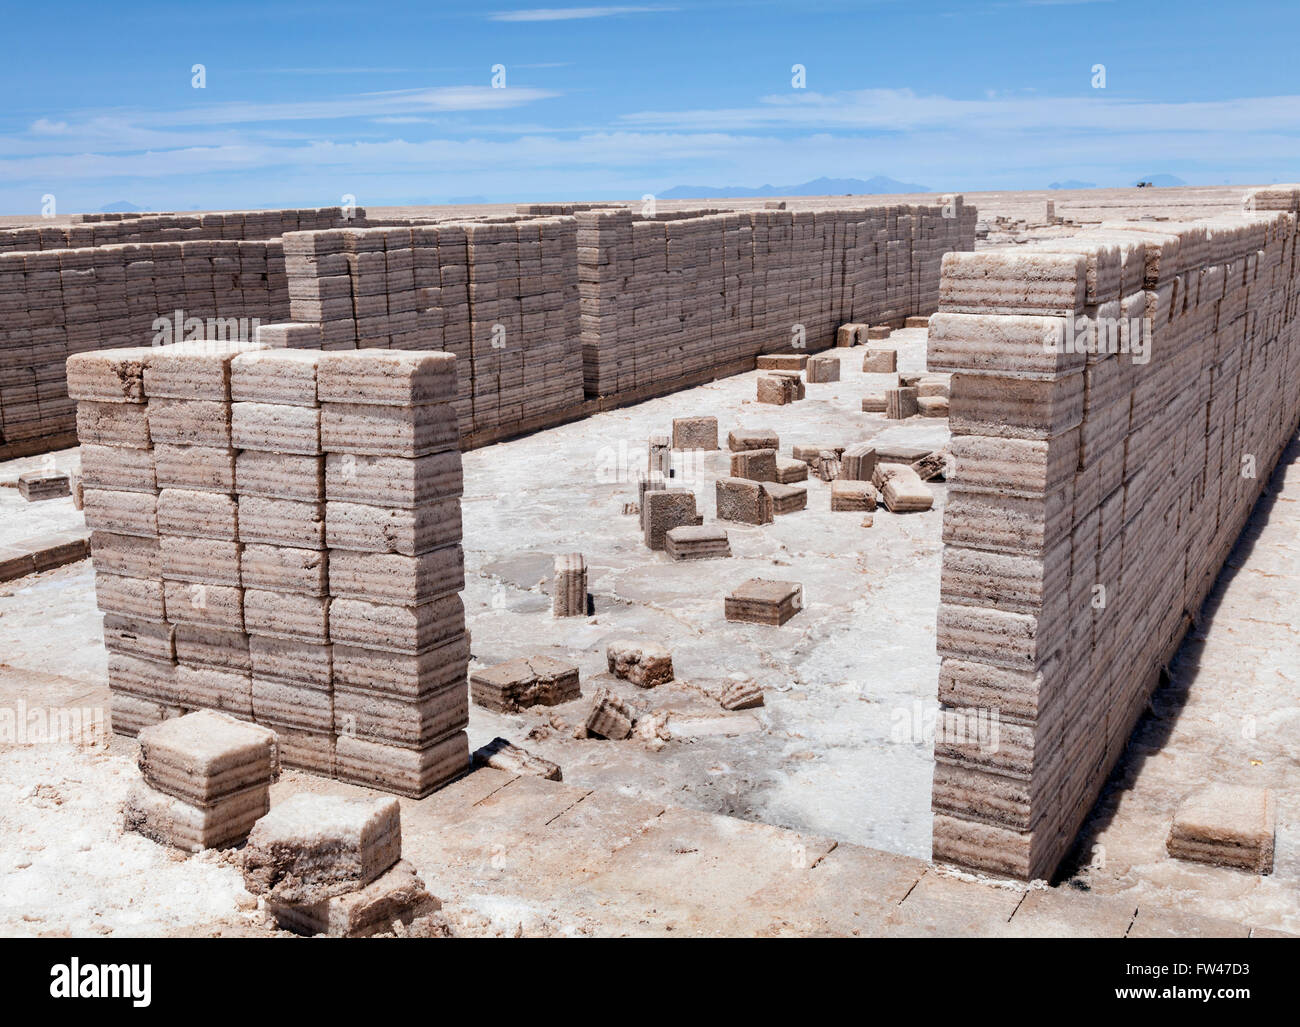 Salt blocks cut from Uyuni salt flats, Bolivia Stock Photo